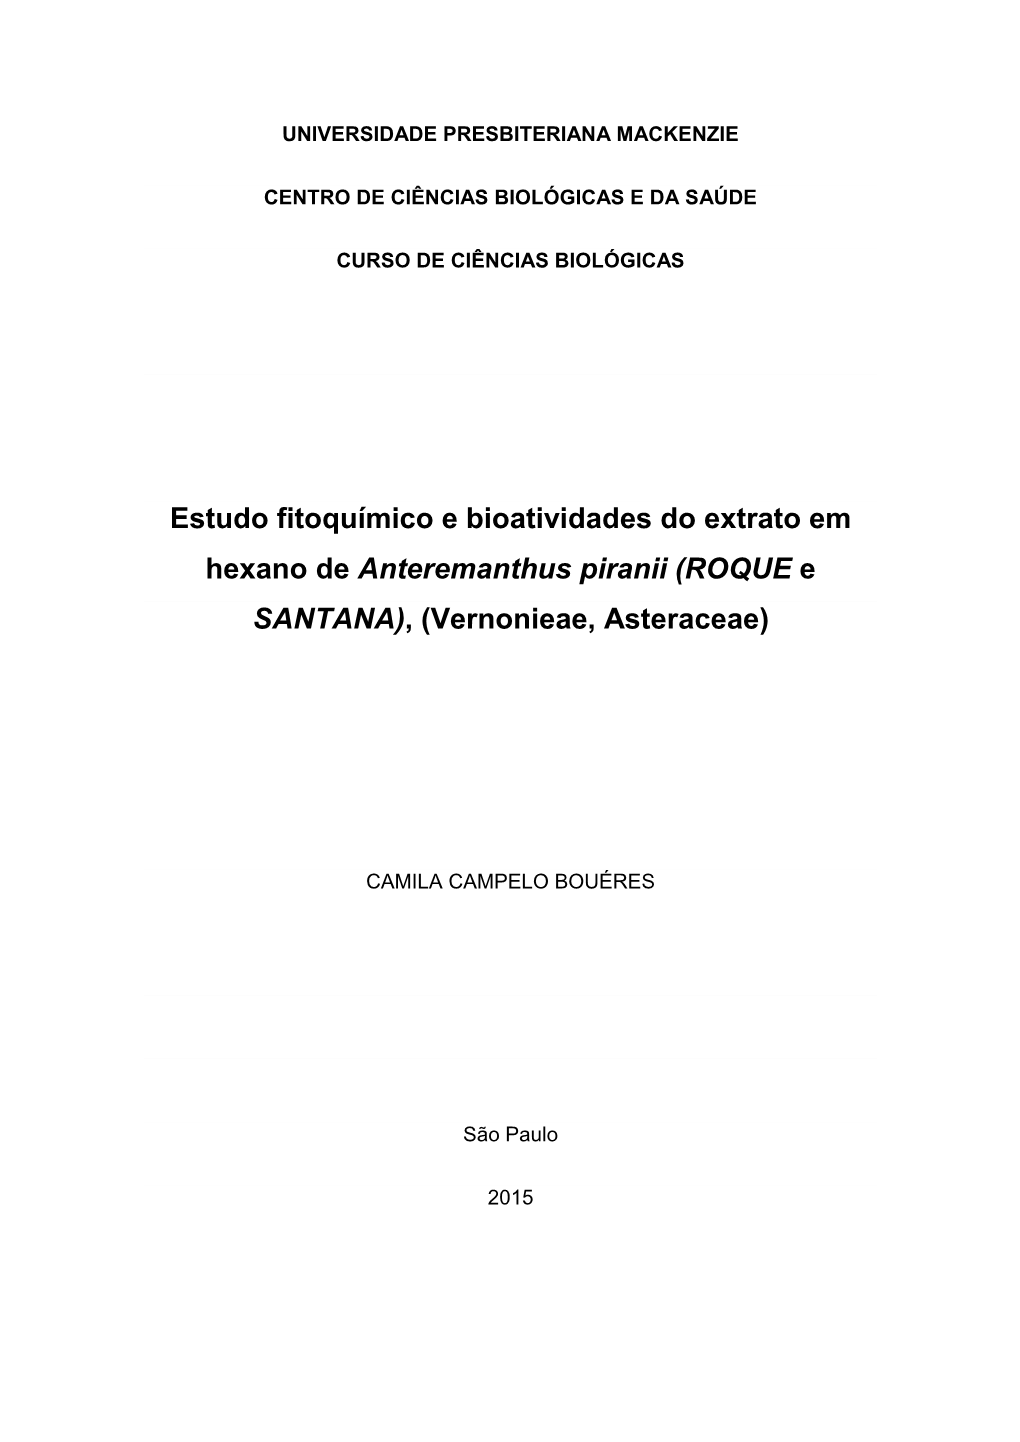 Estudo Fitoquímico E Bioatividades Do Extrato Em Hexano De Anteremanthus Piranii (ROQUE E SANTANA), (Vernonieae, Asteraceae)